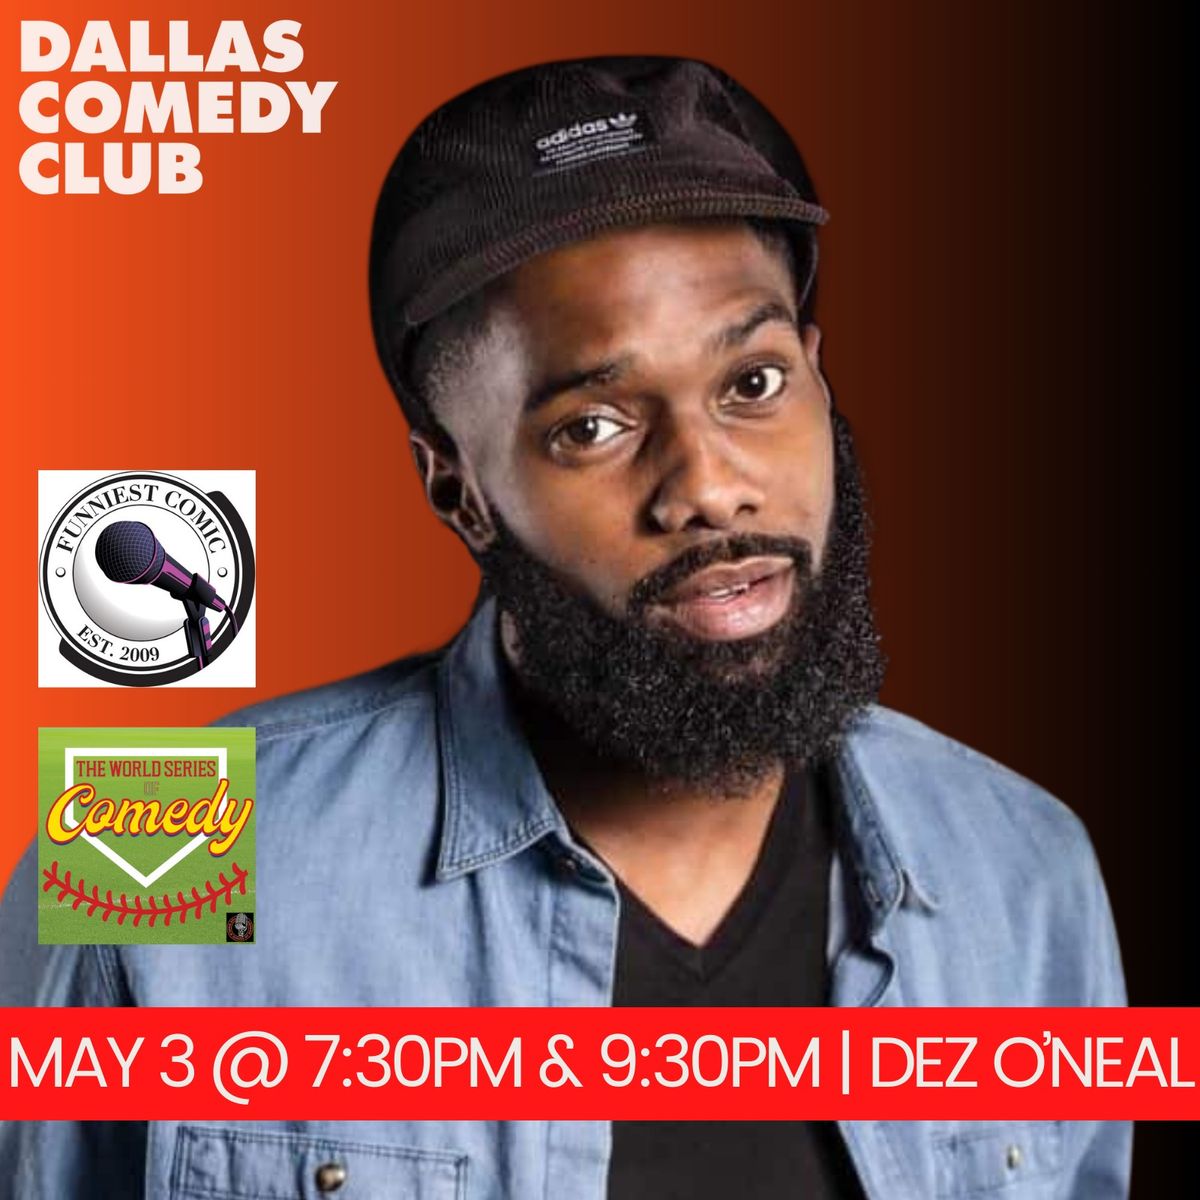 Dallas Comedy Club Presents: Dez O'Neal